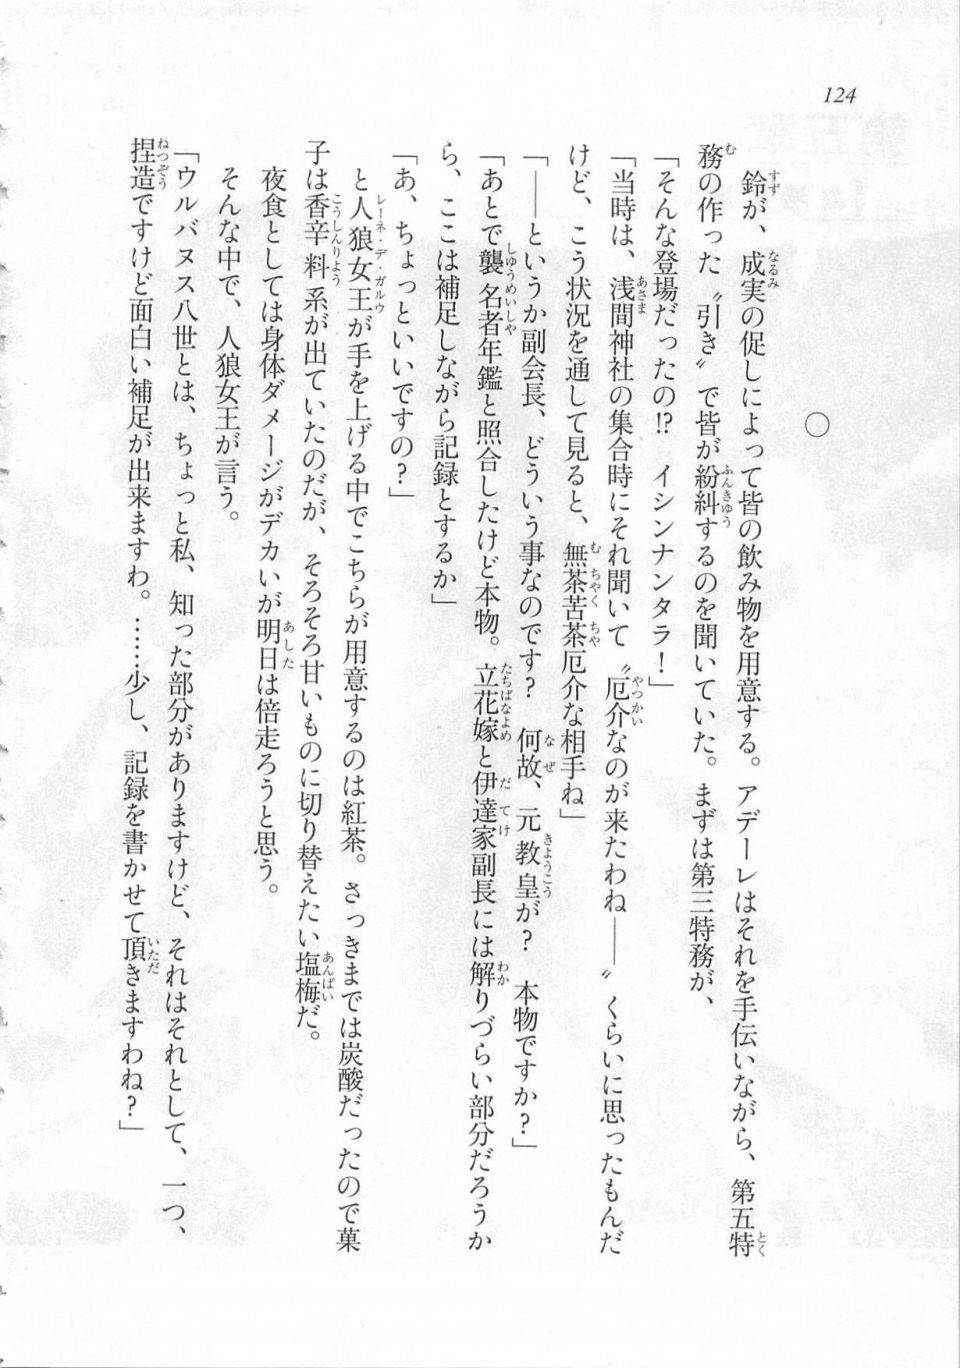 Kyoukai Senjou no Horizon LN Sidestory Vol 3 - Photo #128